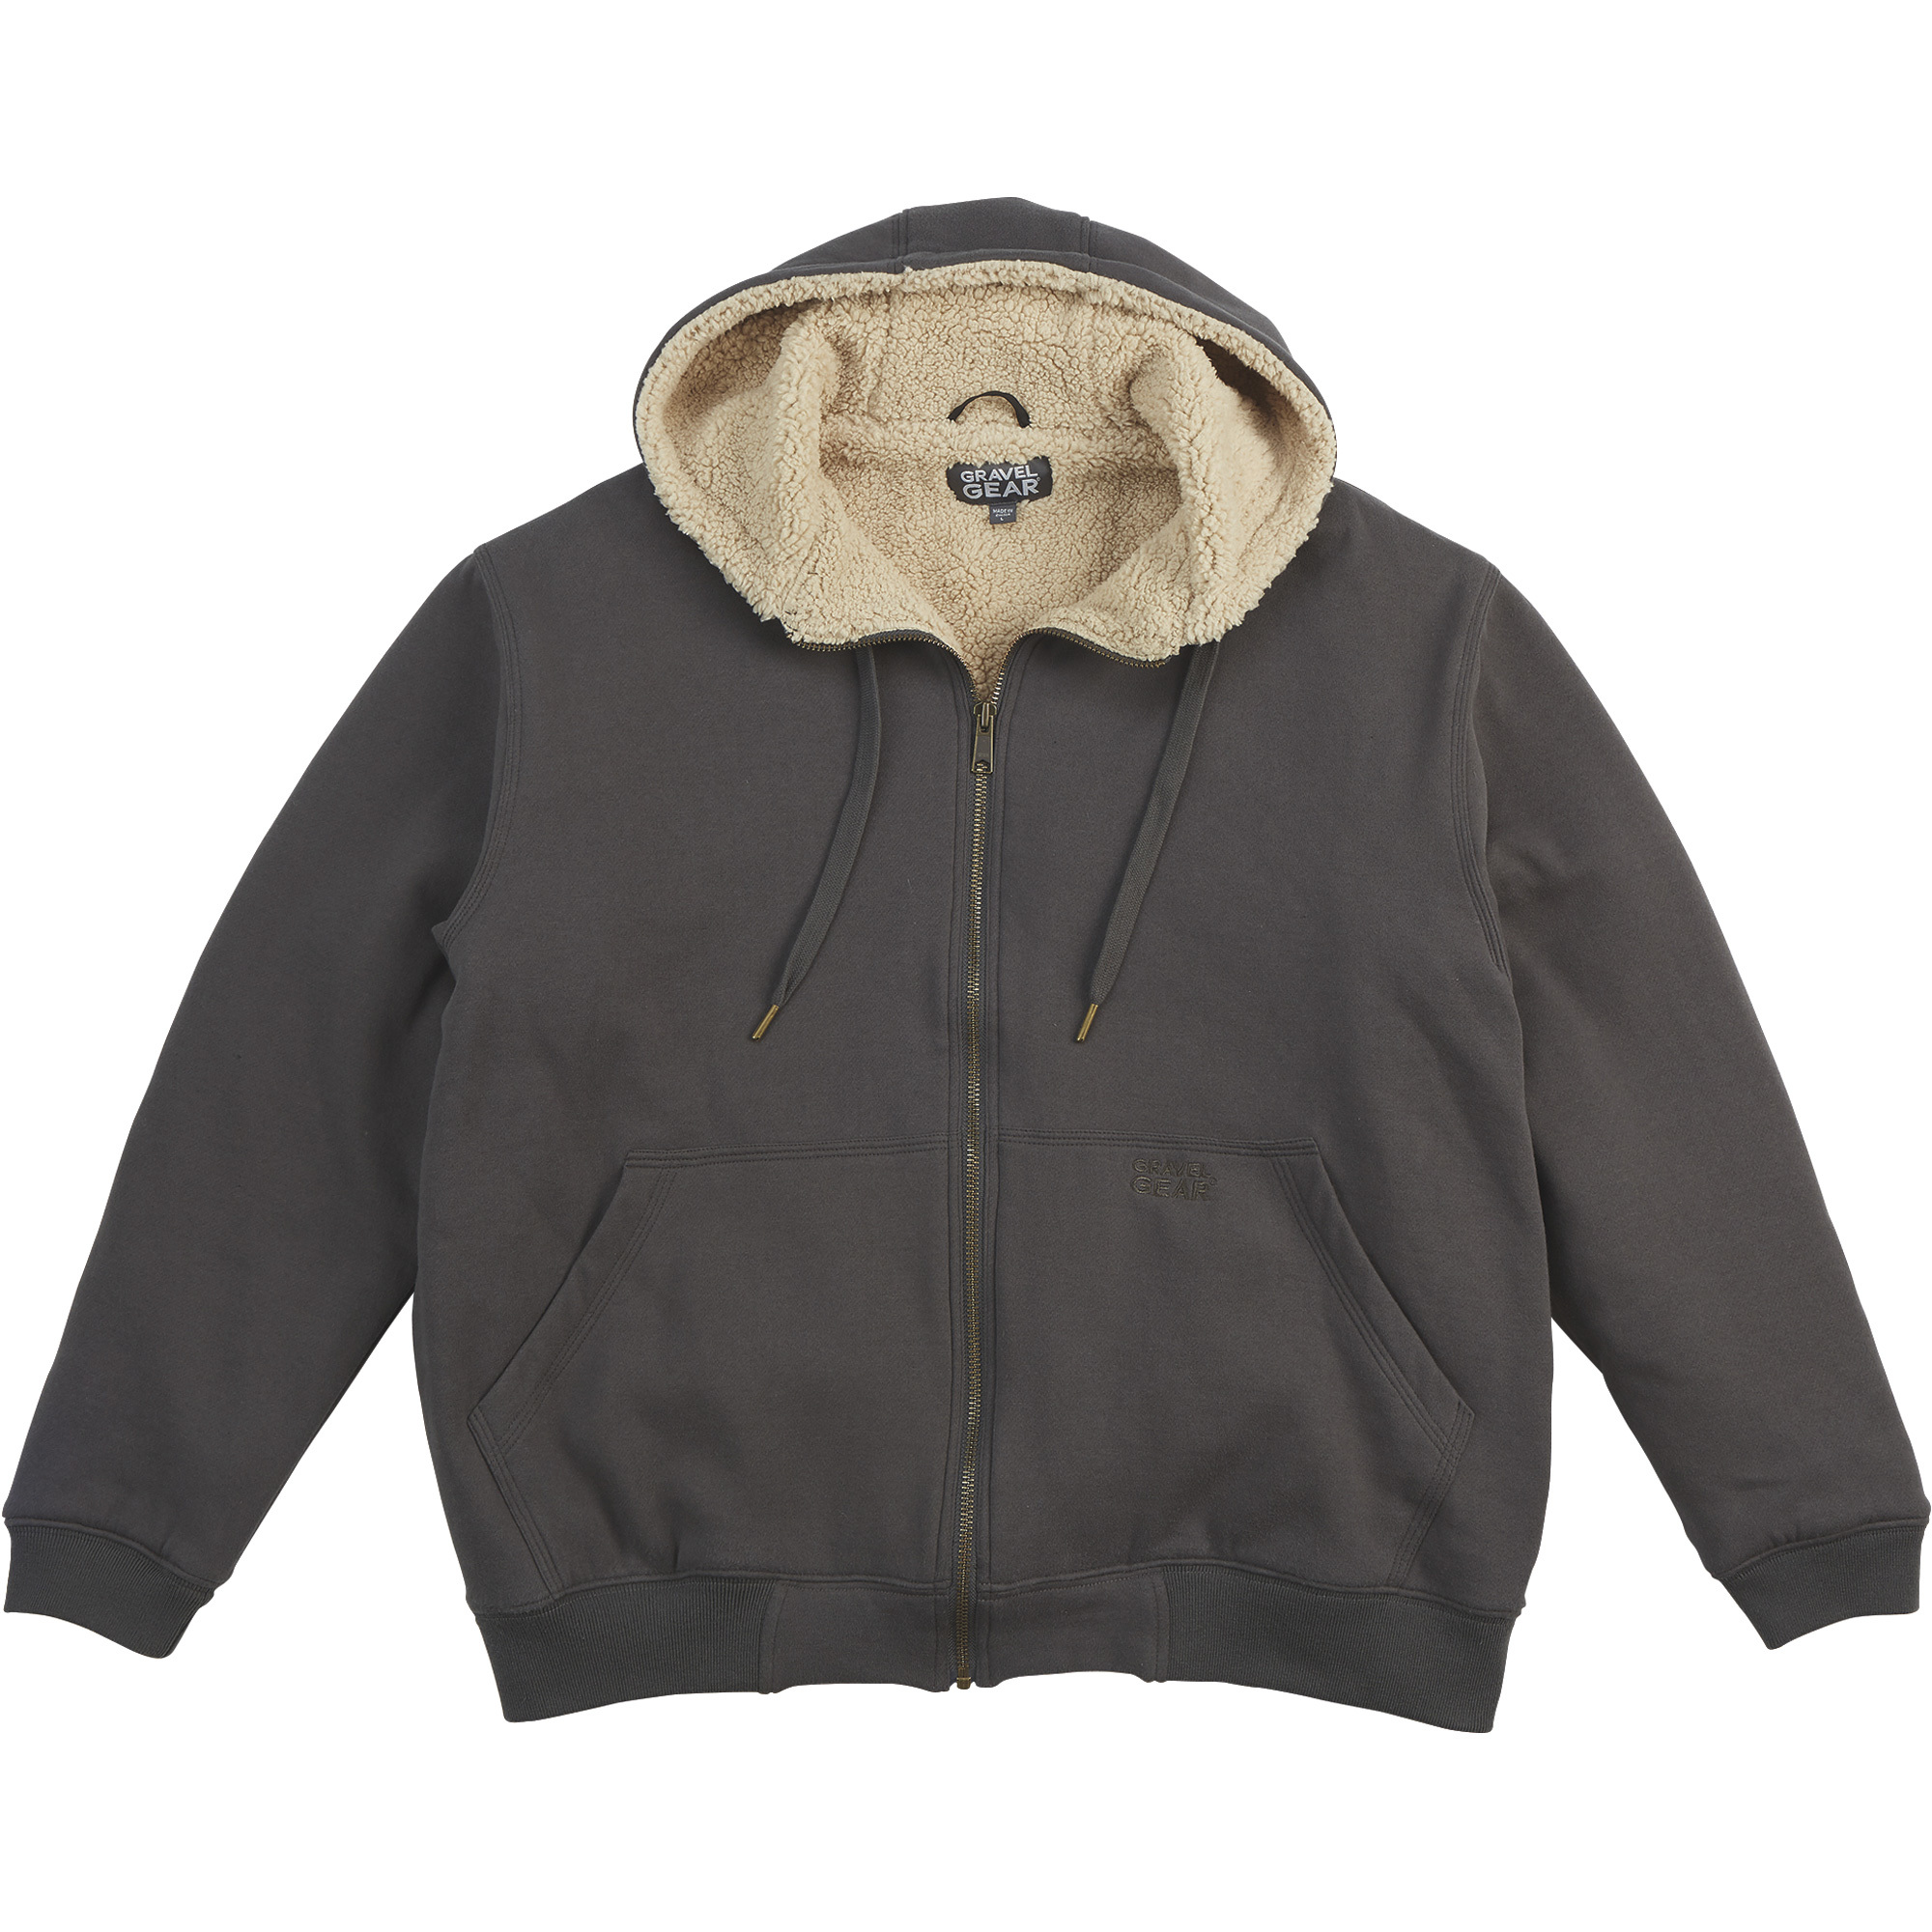 Gravel Gear Men's Sherpa-Lined Full-Zip Hooded Sweatshirt â Charcoal, XL